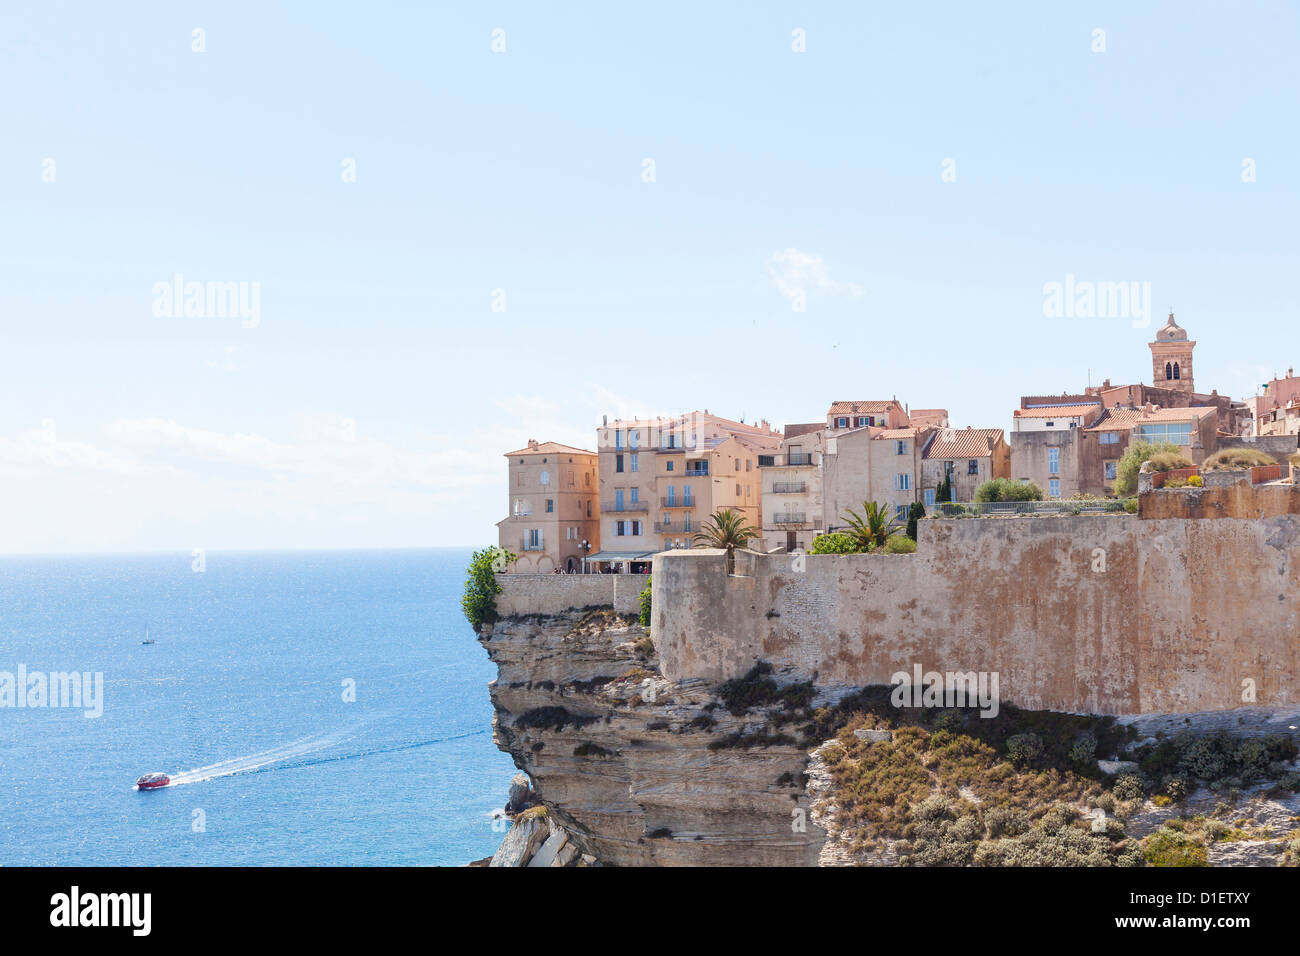 Vieille ville de Bonifacio sur la roche, Corse, France Banque D'Images